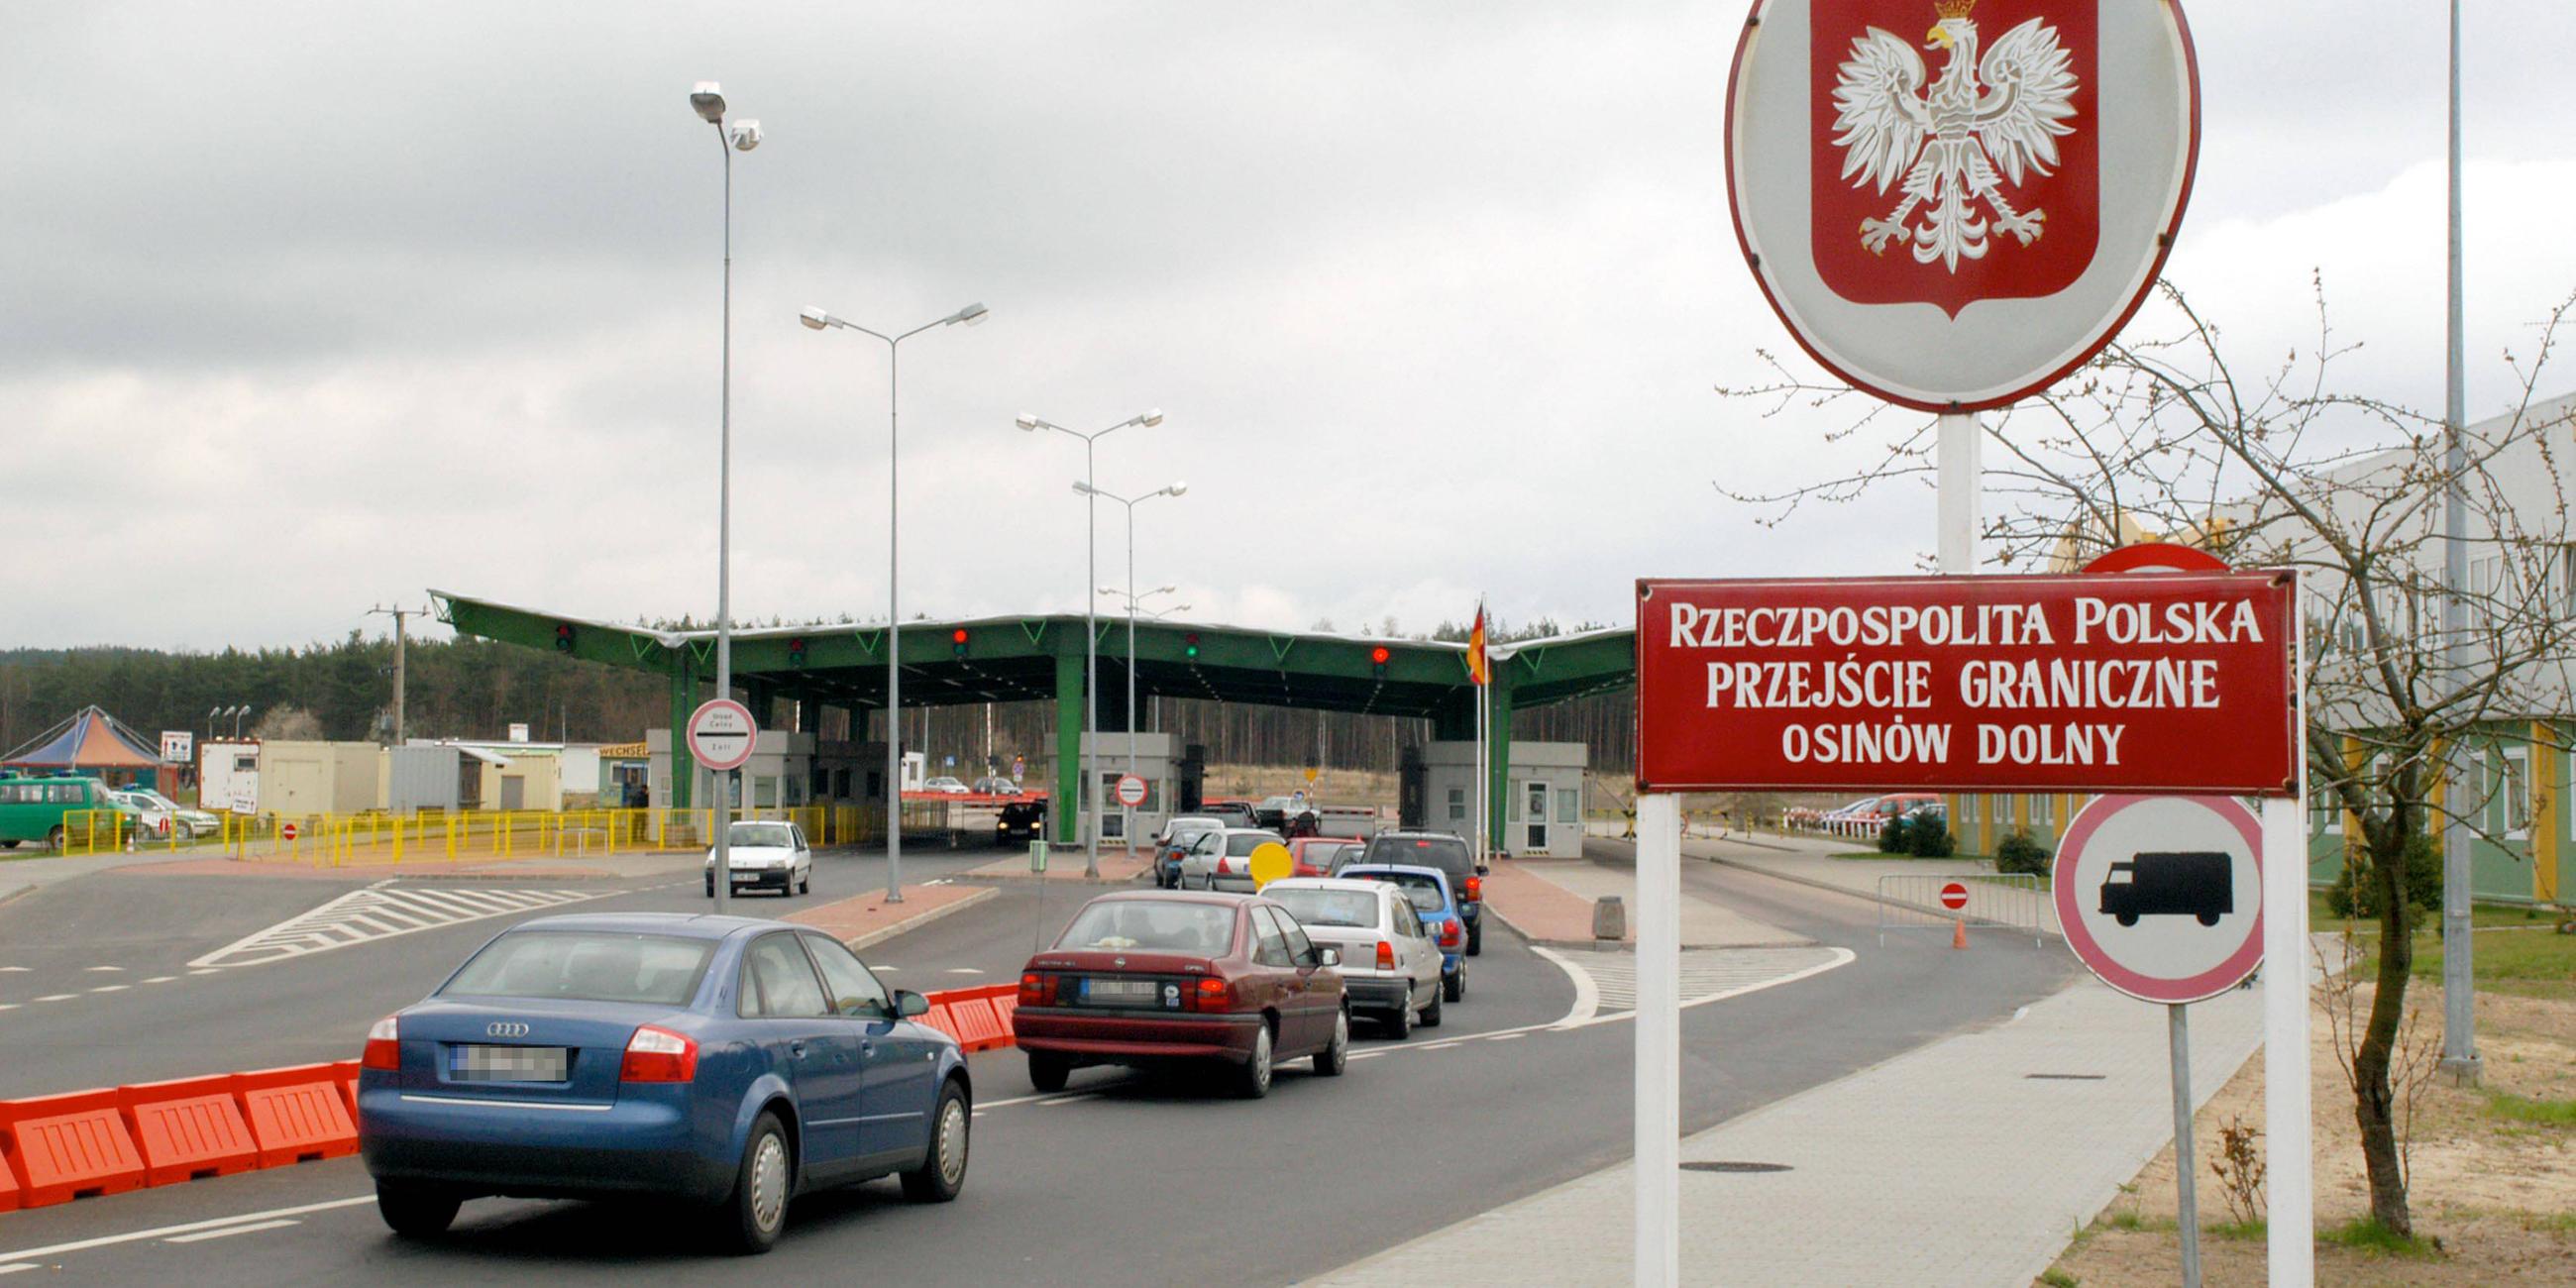 Deutsch-Polnischer Grenzübergang Hohenwutzen/Osinow Dolny